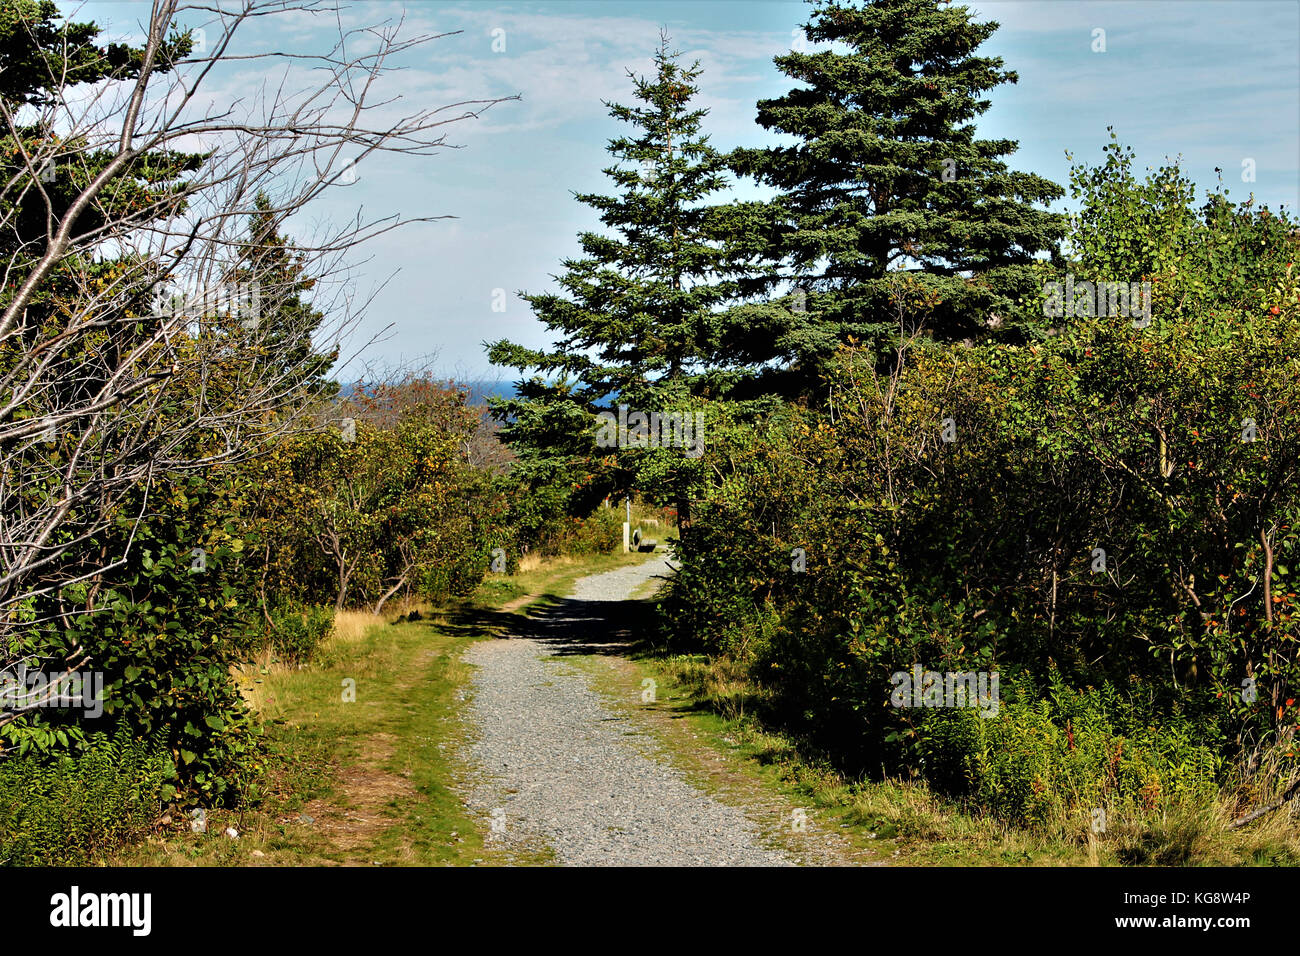 Sentier de randonnée bordé d'arbres, Signal Hill, st. john's, Terre-Neuve, l'océan Atlantique est visible au loin. Banque D'Images